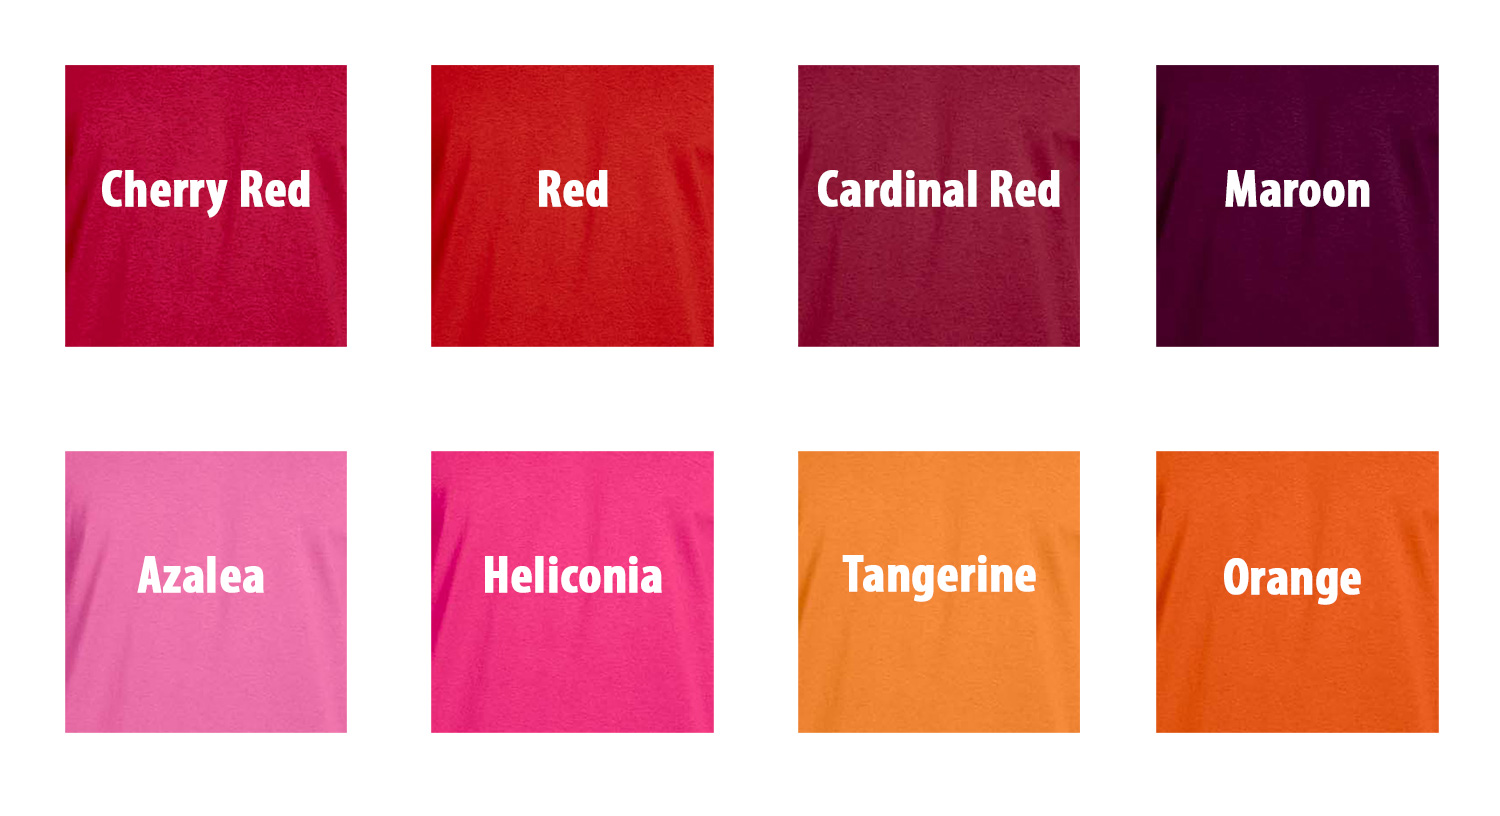 cardinal red jersey